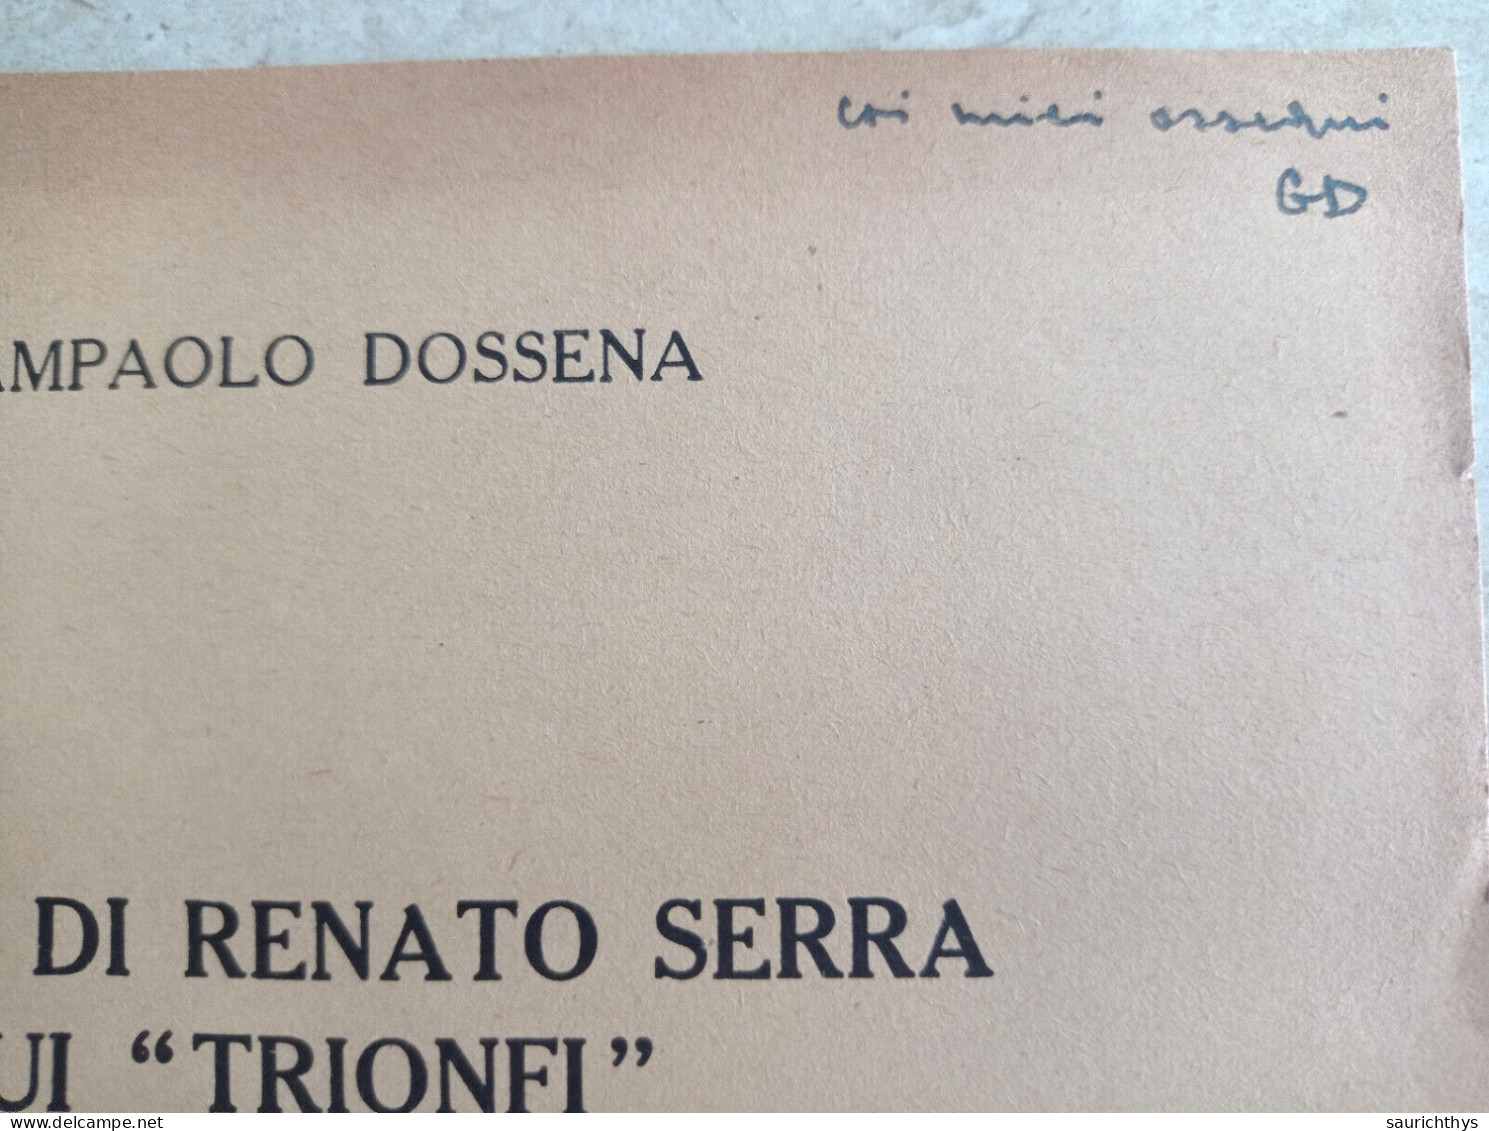 La Tesi Di Renato Serra Sui Trionfi Autografo Giampaolo Dossena Da Cremona Estratto Da Convivium 1956 - Histoire, Biographie, Philosophie